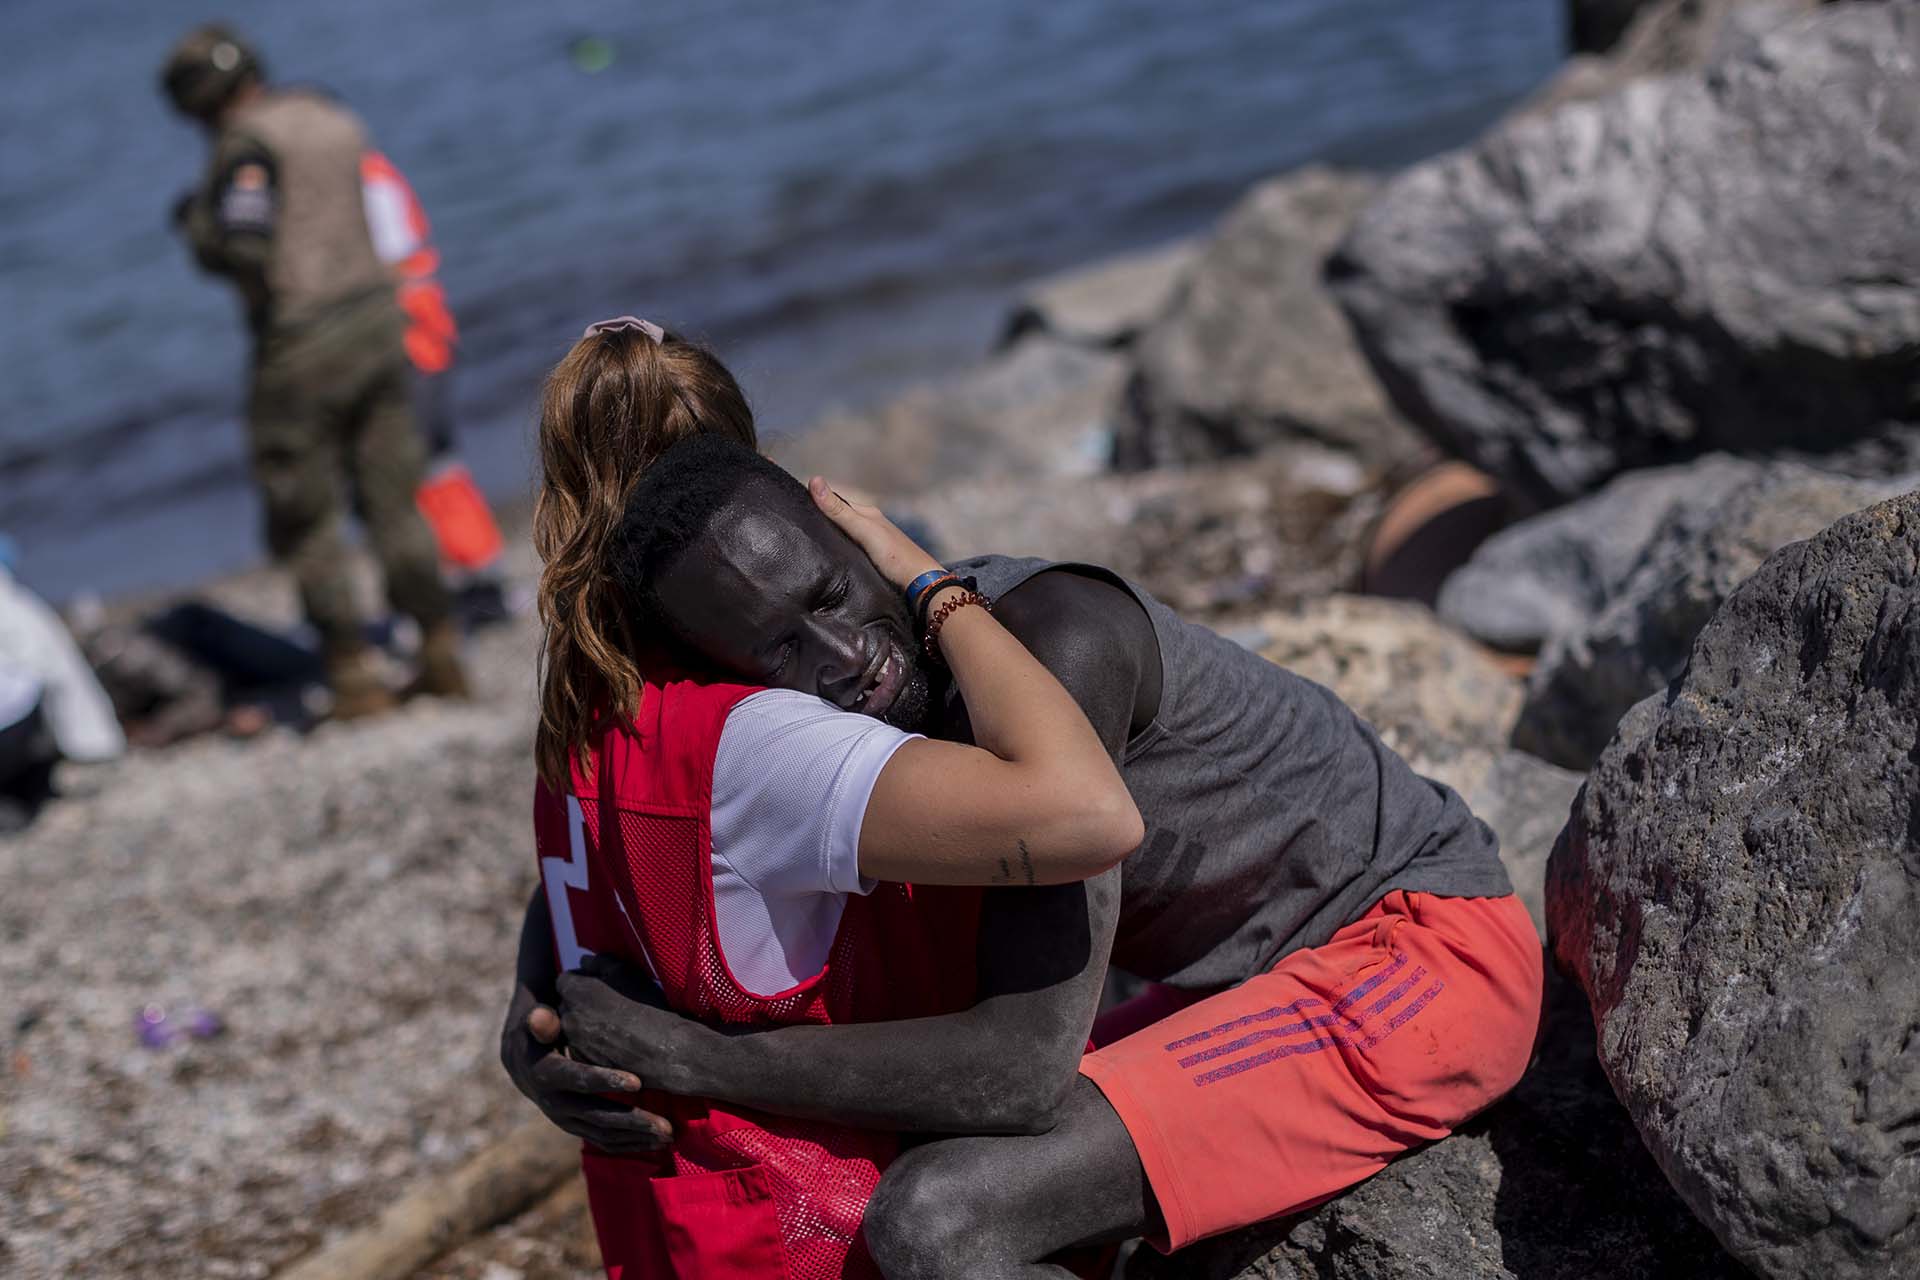 Un migrante es consolado por un miembro de la Cruz Roja española en el enclave español de Ceuta, cerca de la frontera de Marruecos y España, el 18 de mayo de 2021. (AP Photo/Bernat Armangue)